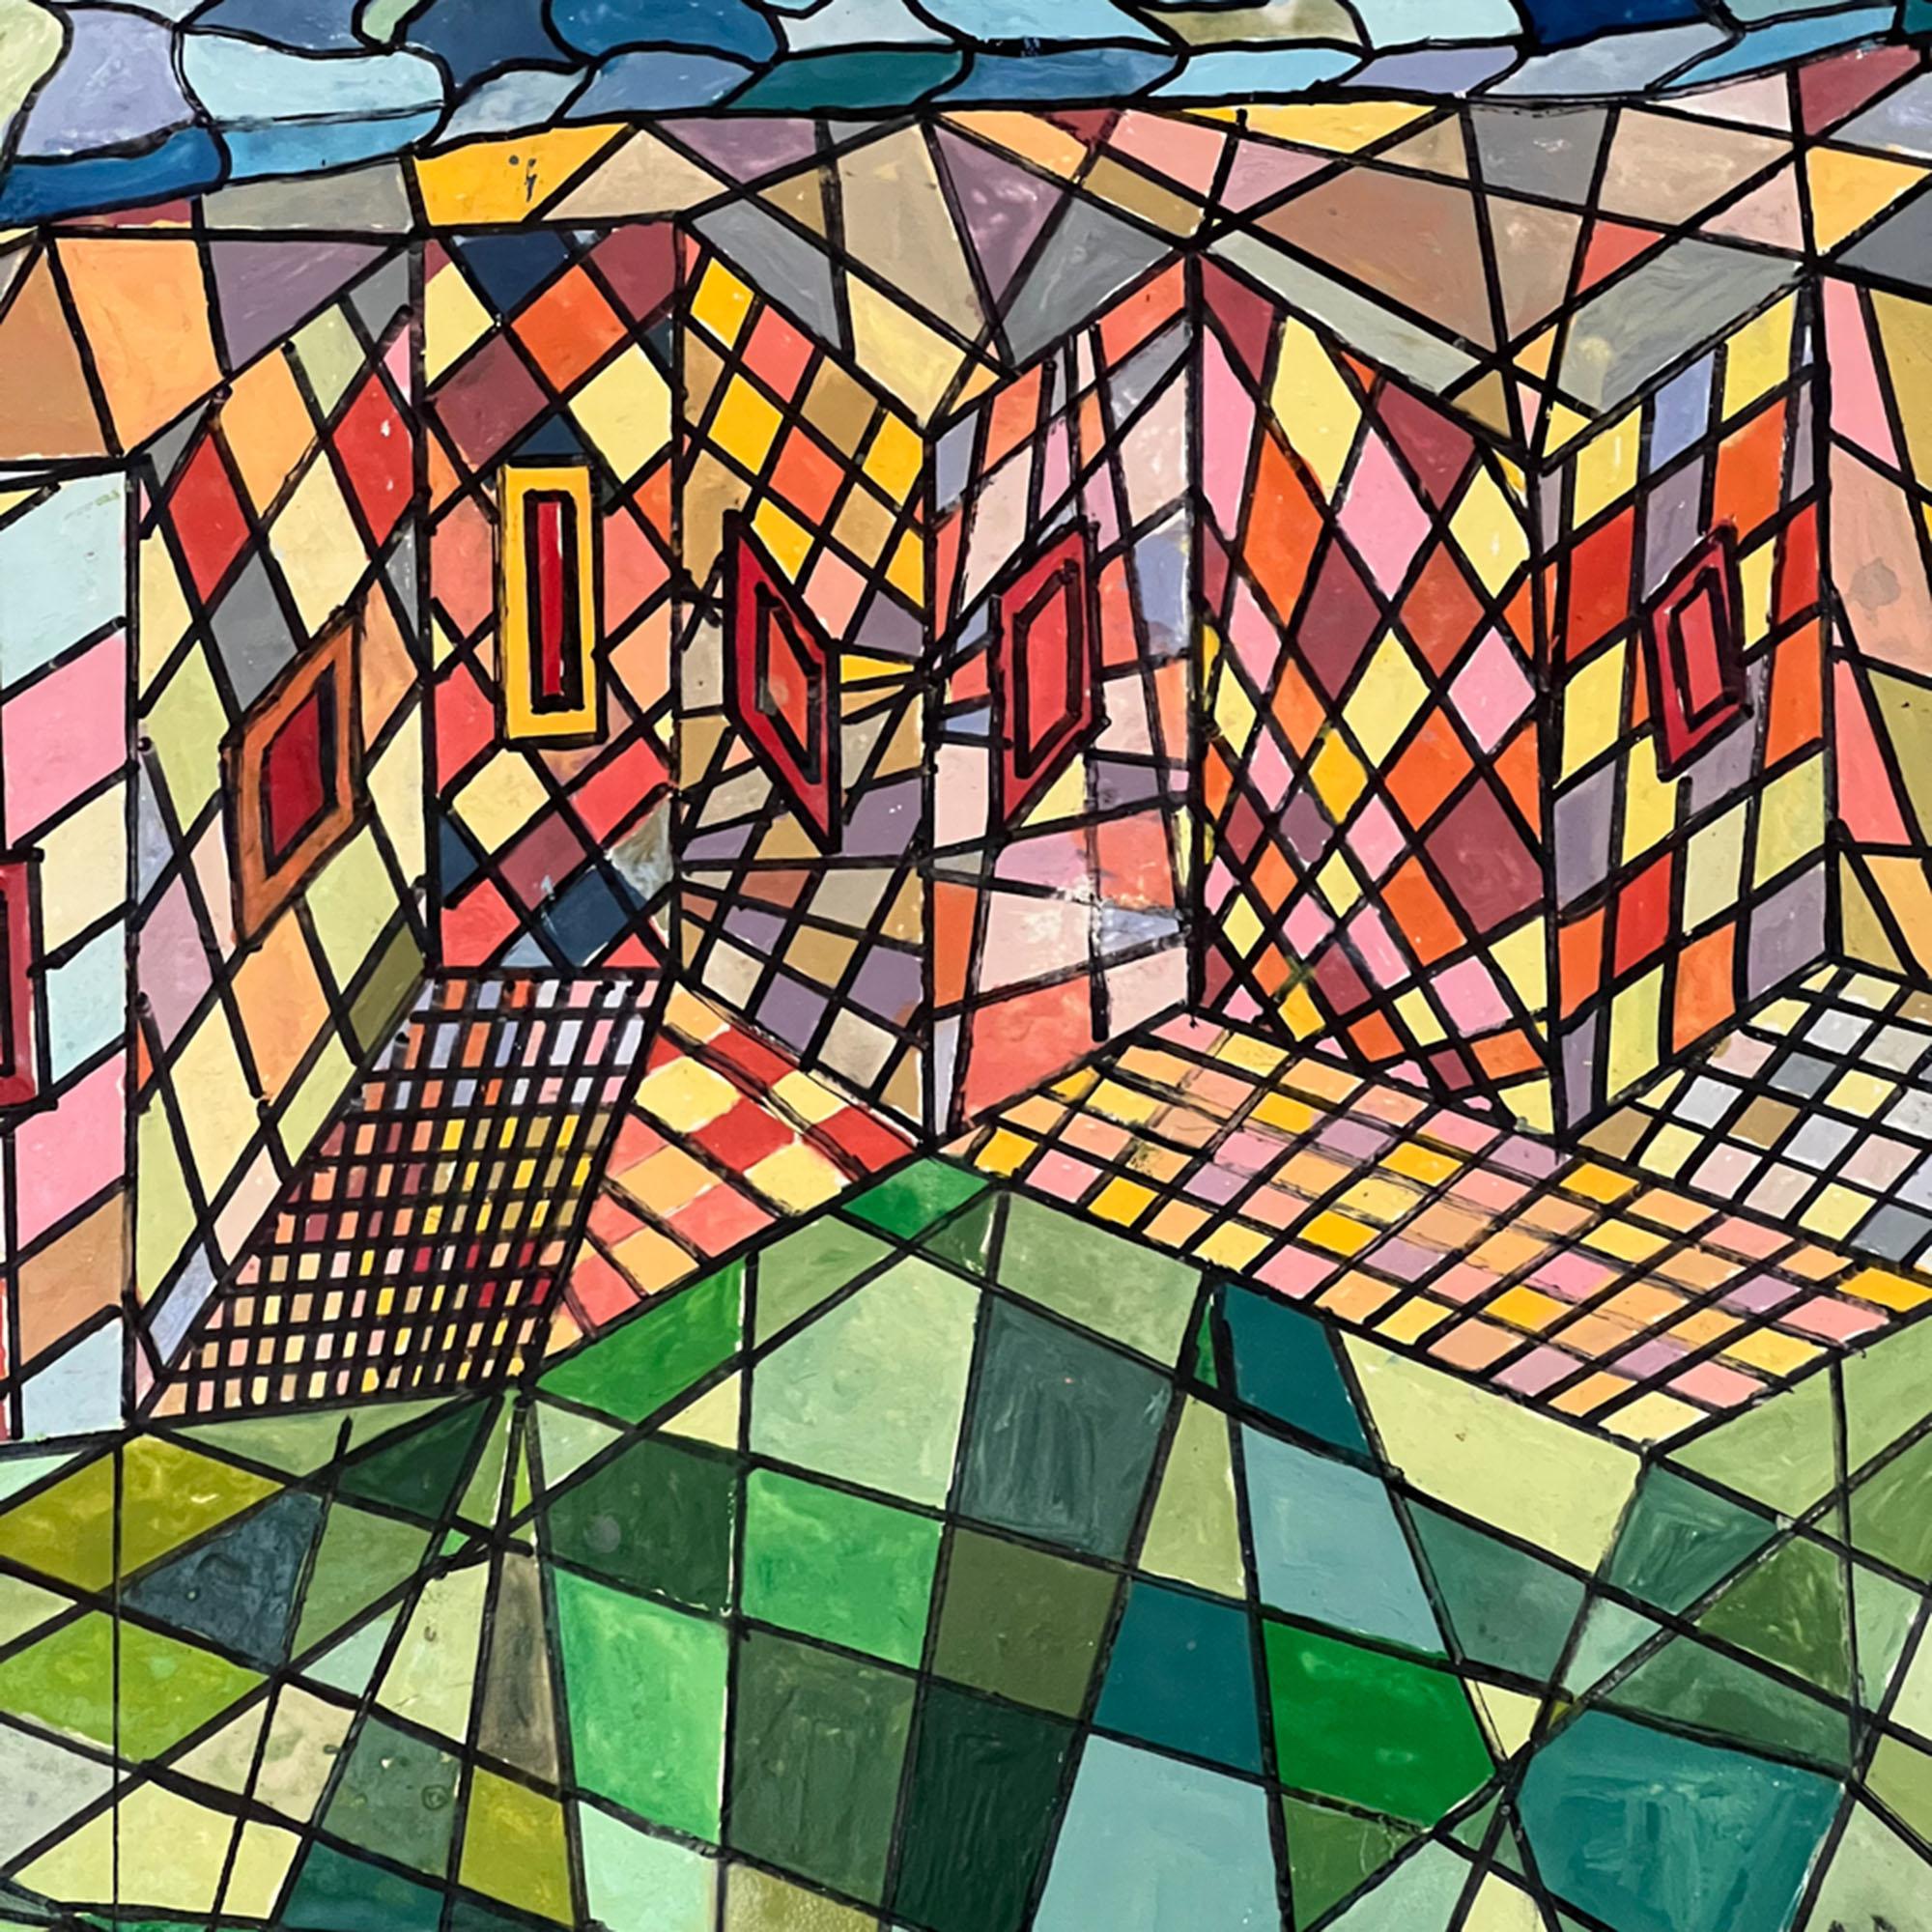 Cette peinture colorée représente une scène de village abstraite dans un style géométrique.

L'élégant cadre 